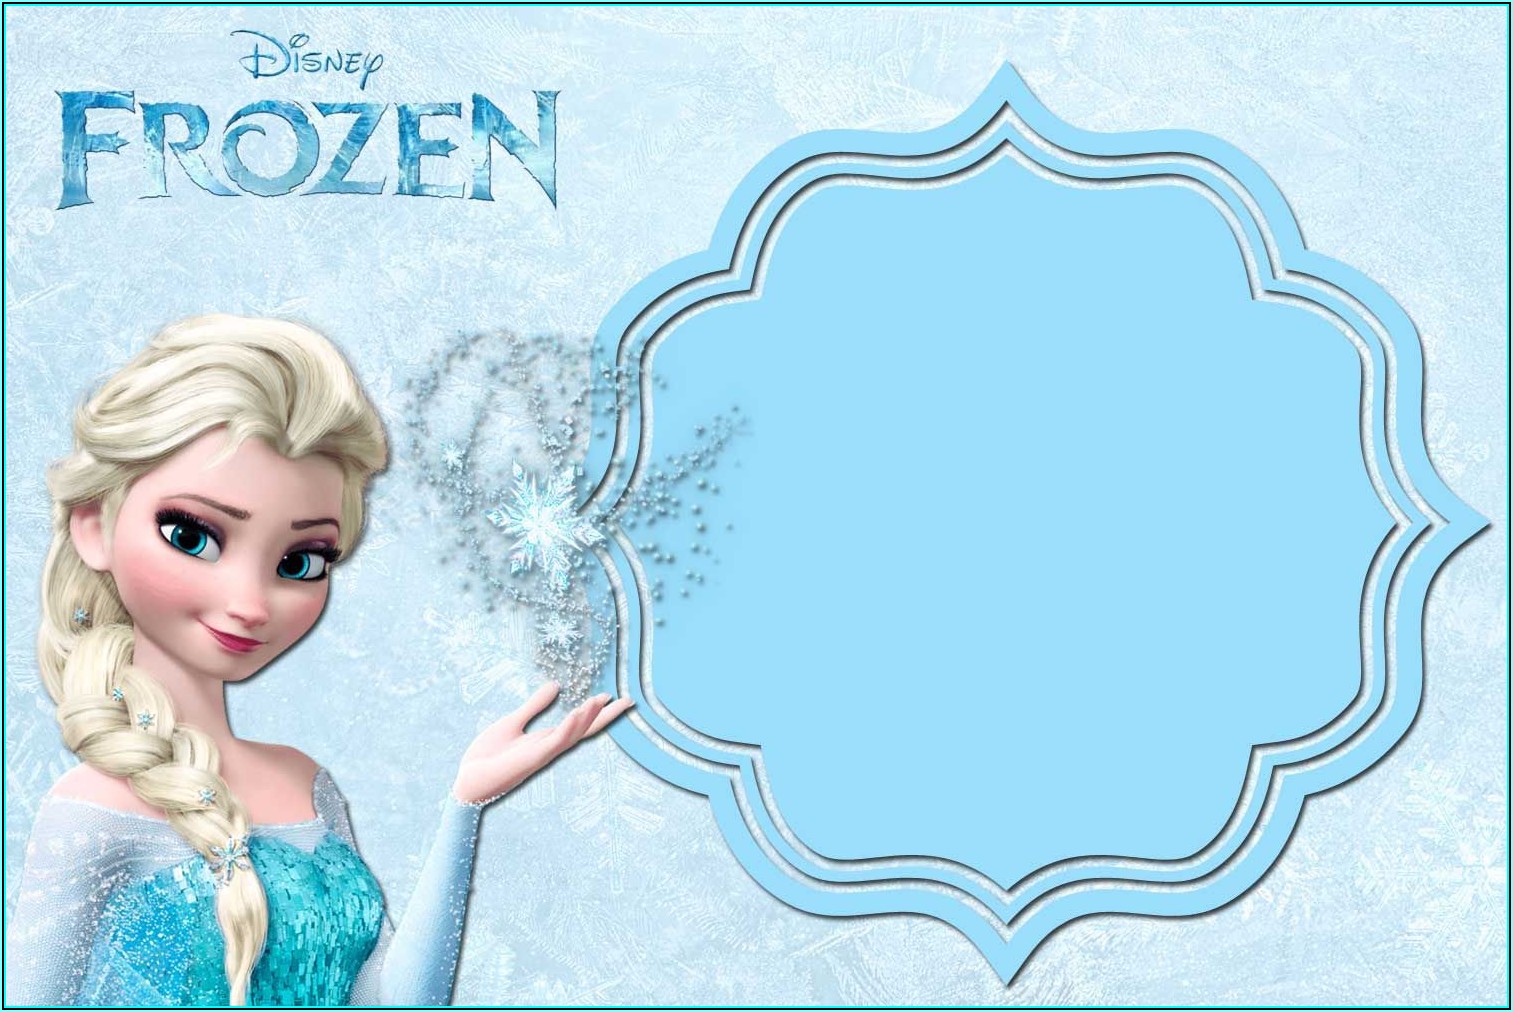 Free Frozen Invitation Templates